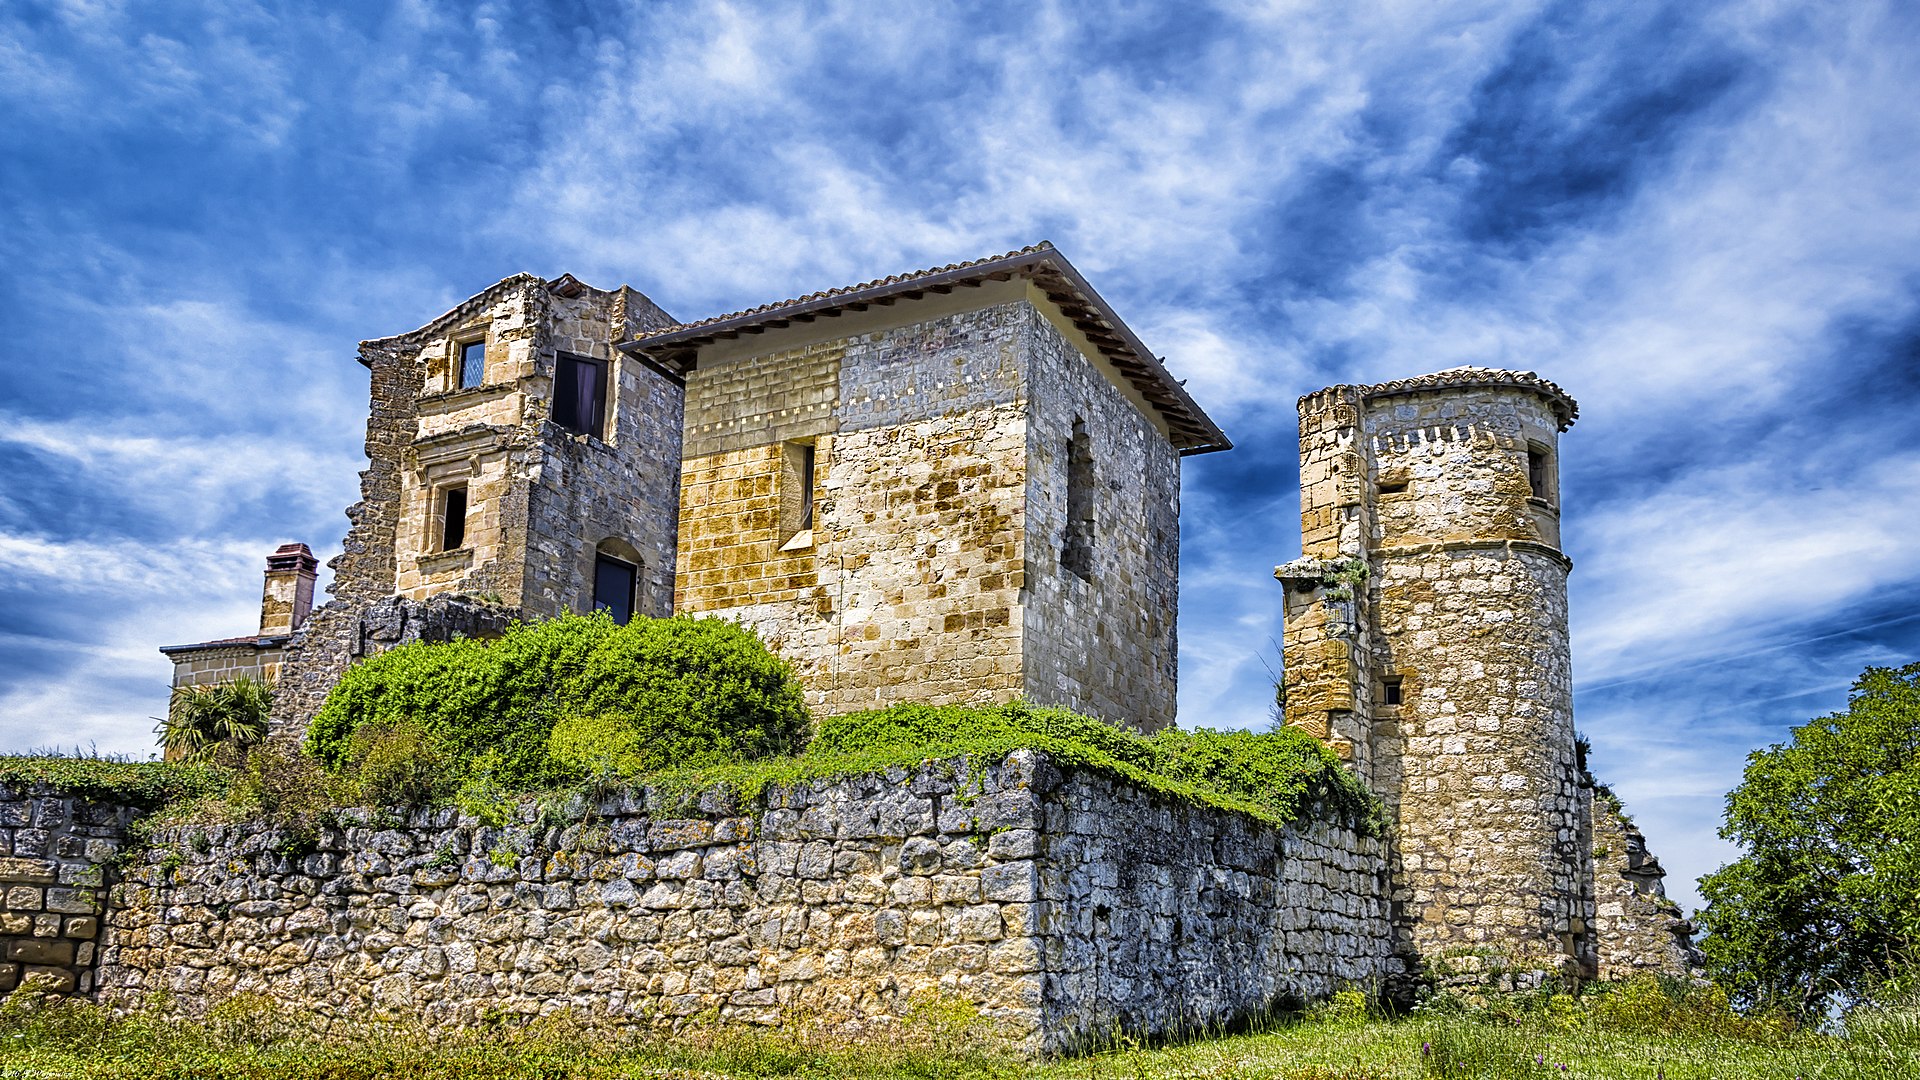 Le Château de Magrin dans le Tarn Sud-Ouest de la France, qui abrite le musée du pastel. Par TWojtowicz —CC BY-SA 2.0